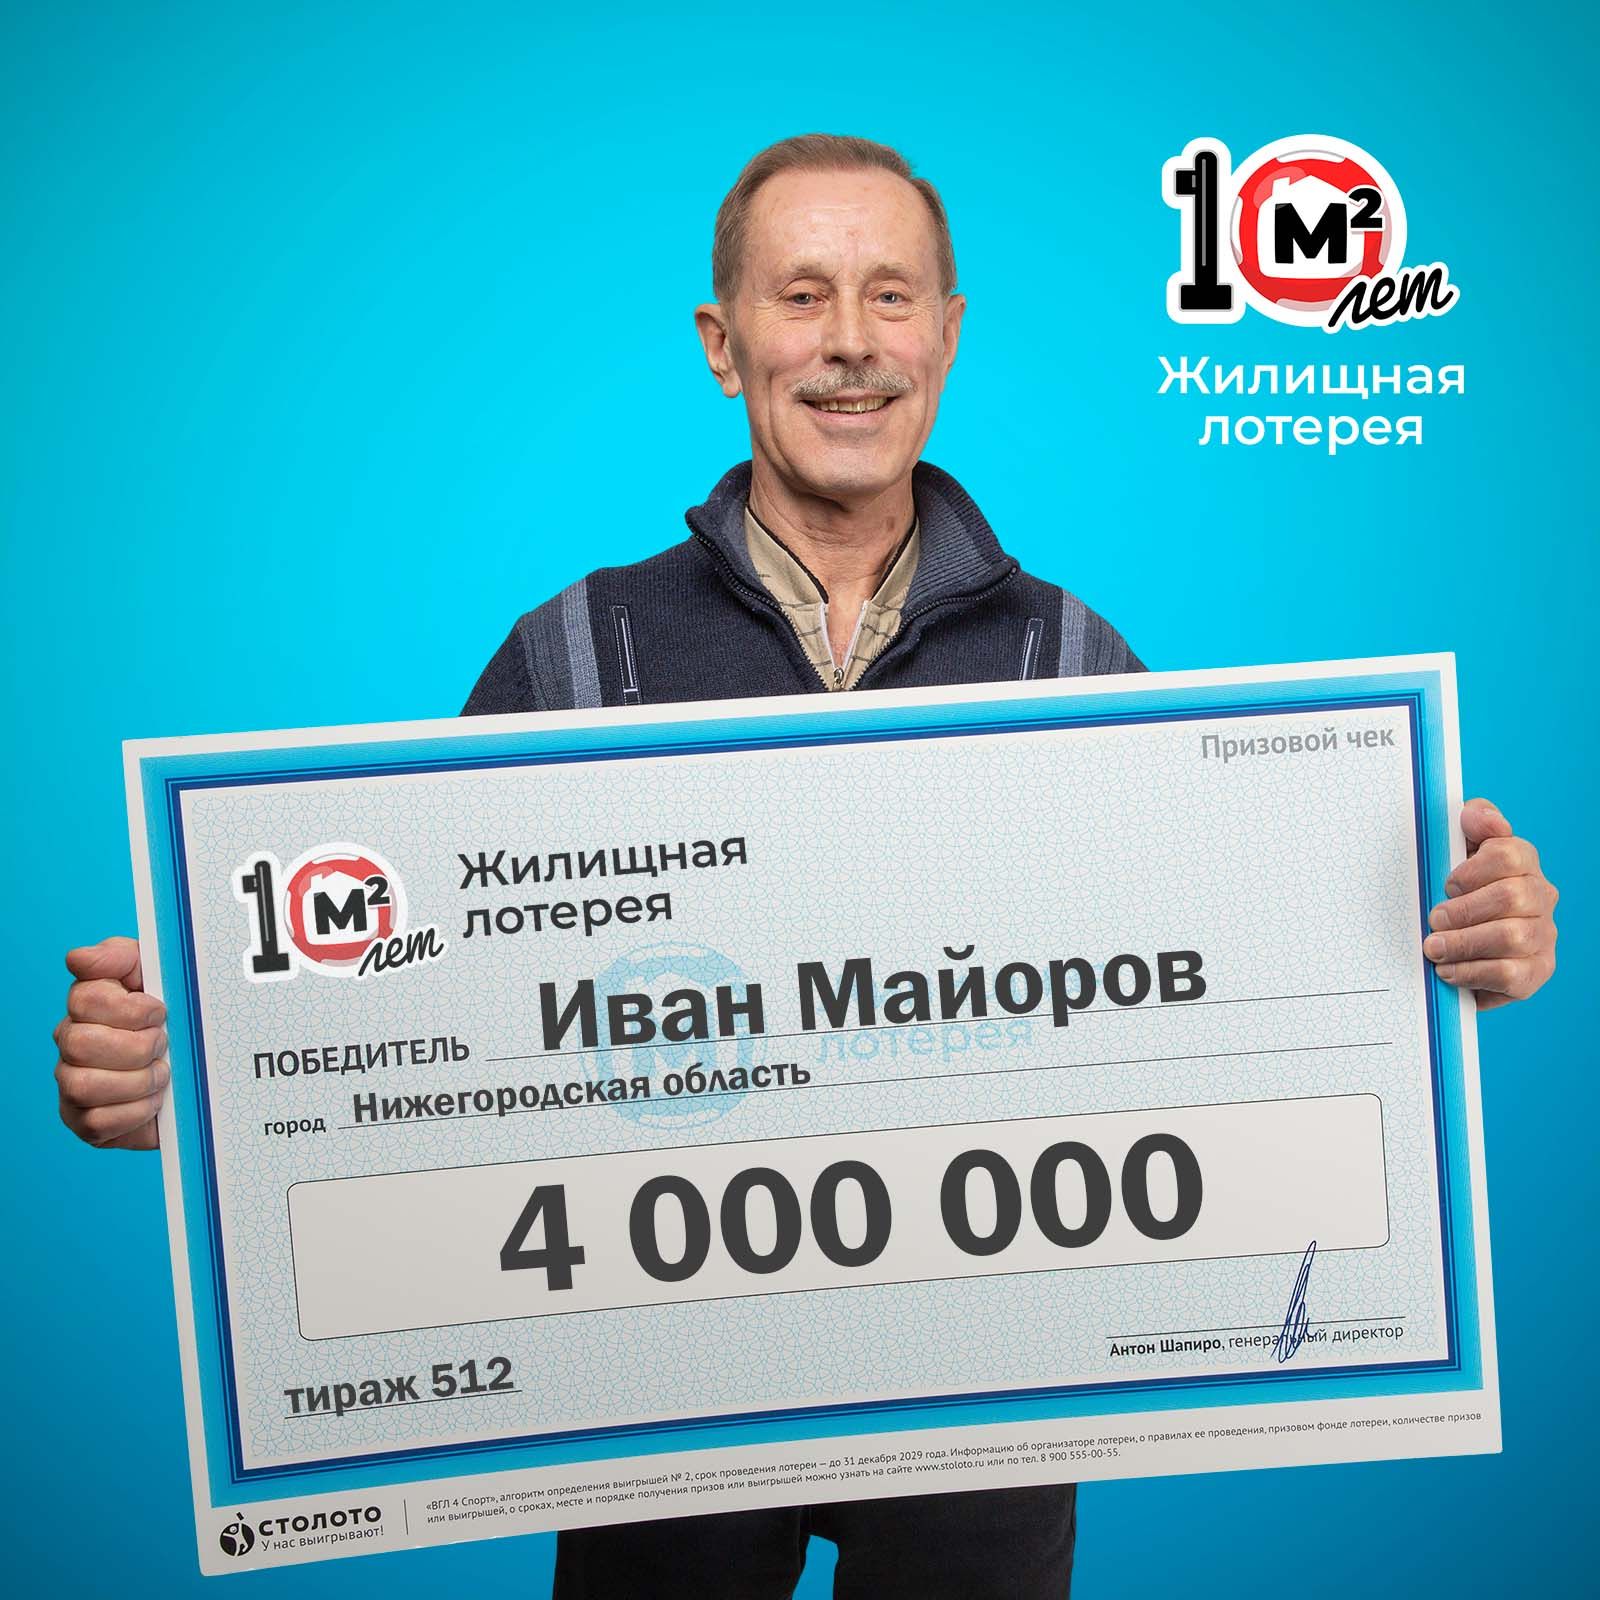 Иван Майоров, победитель «Жилищной лотереи»